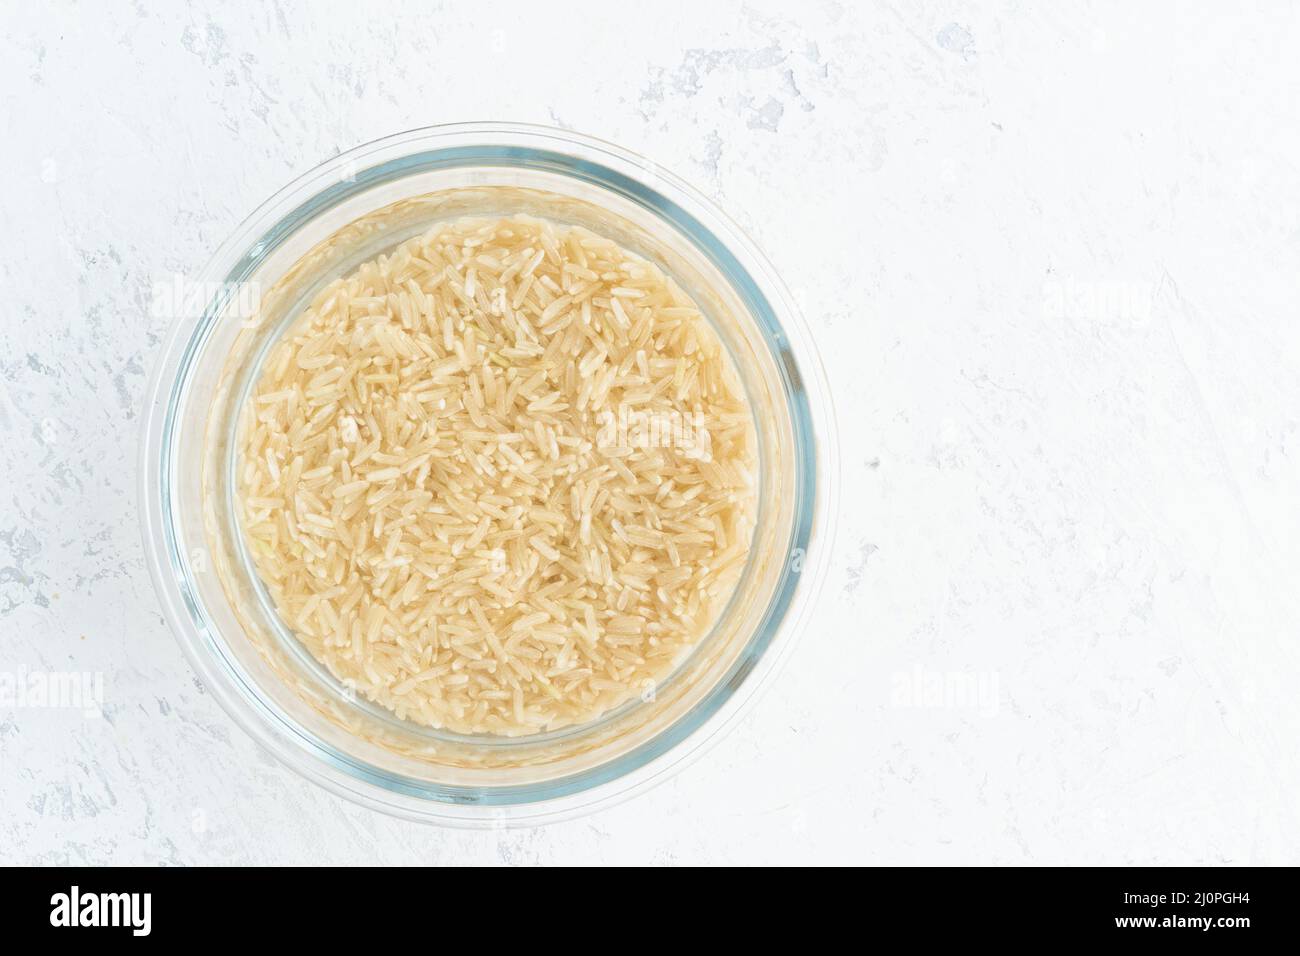 Brauner Reis in Wasser einweichen, um Getreide zu gären und die Phytsäure zu neutralisieren. Stockfoto